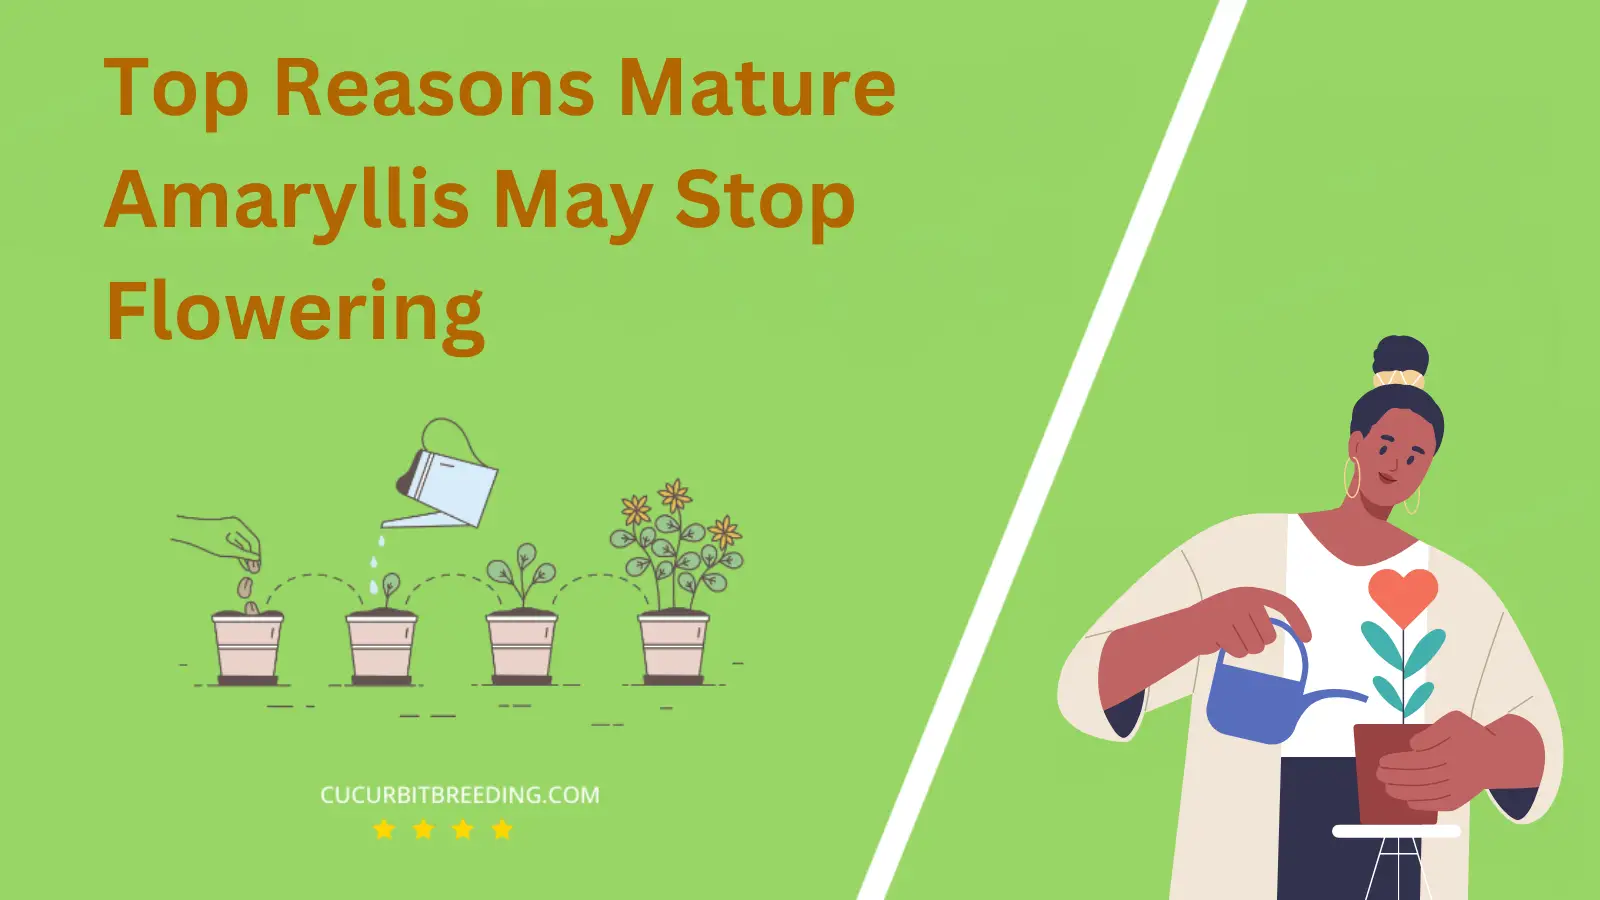 Top Reasons Mature Amaryllis May Stop Flowering